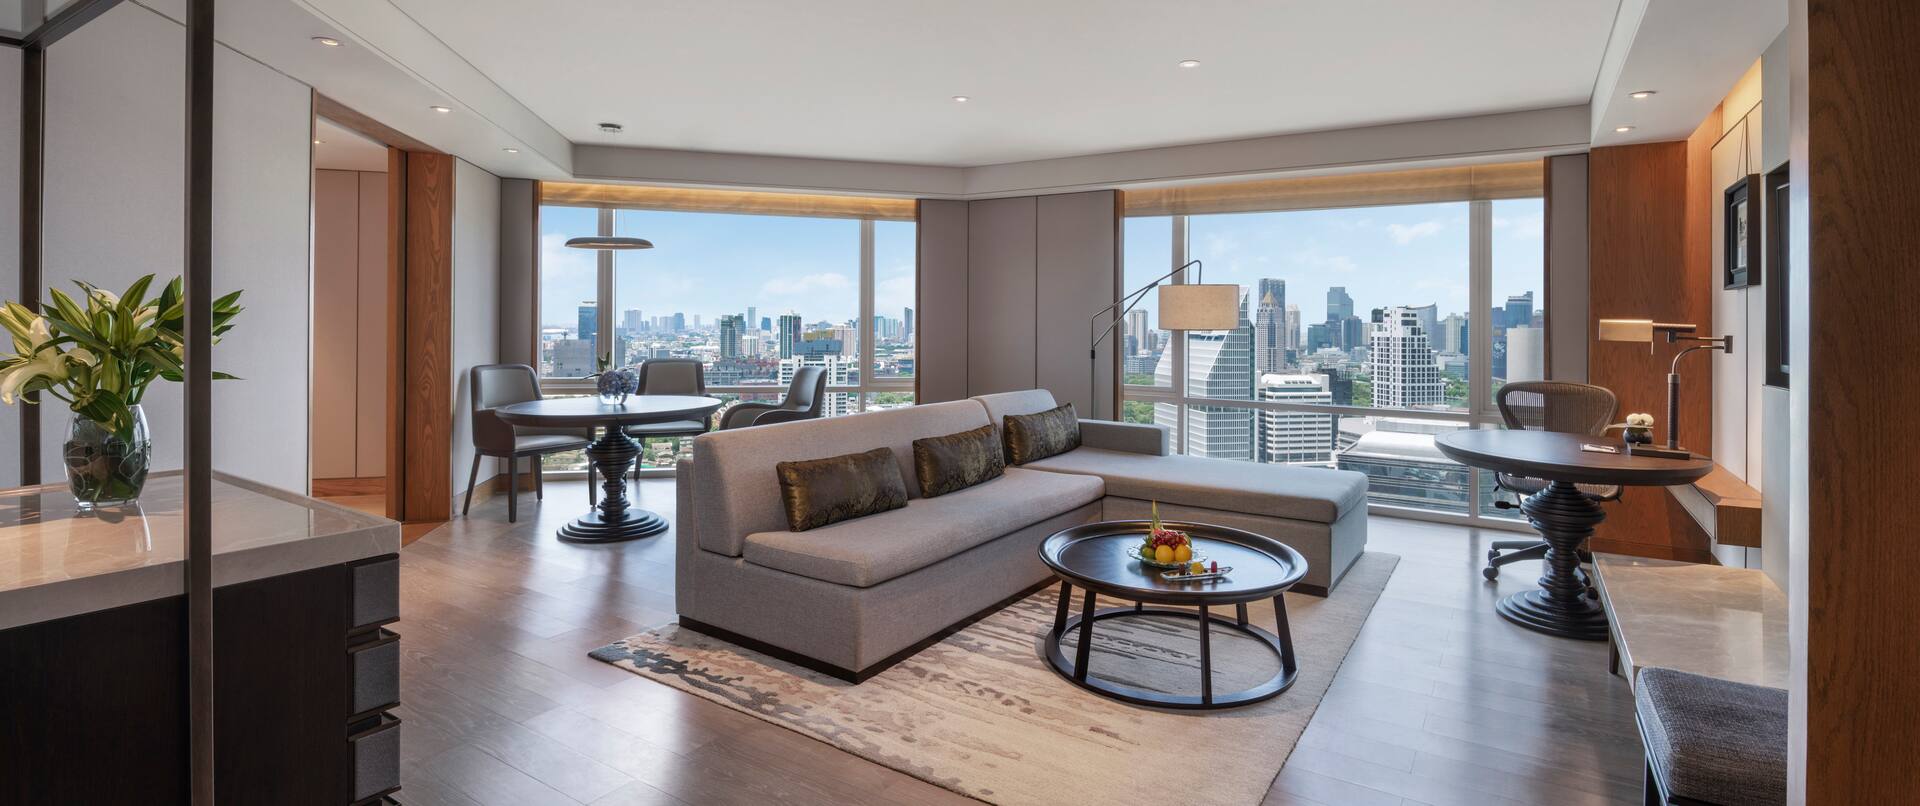 Premium Suite, Living Room